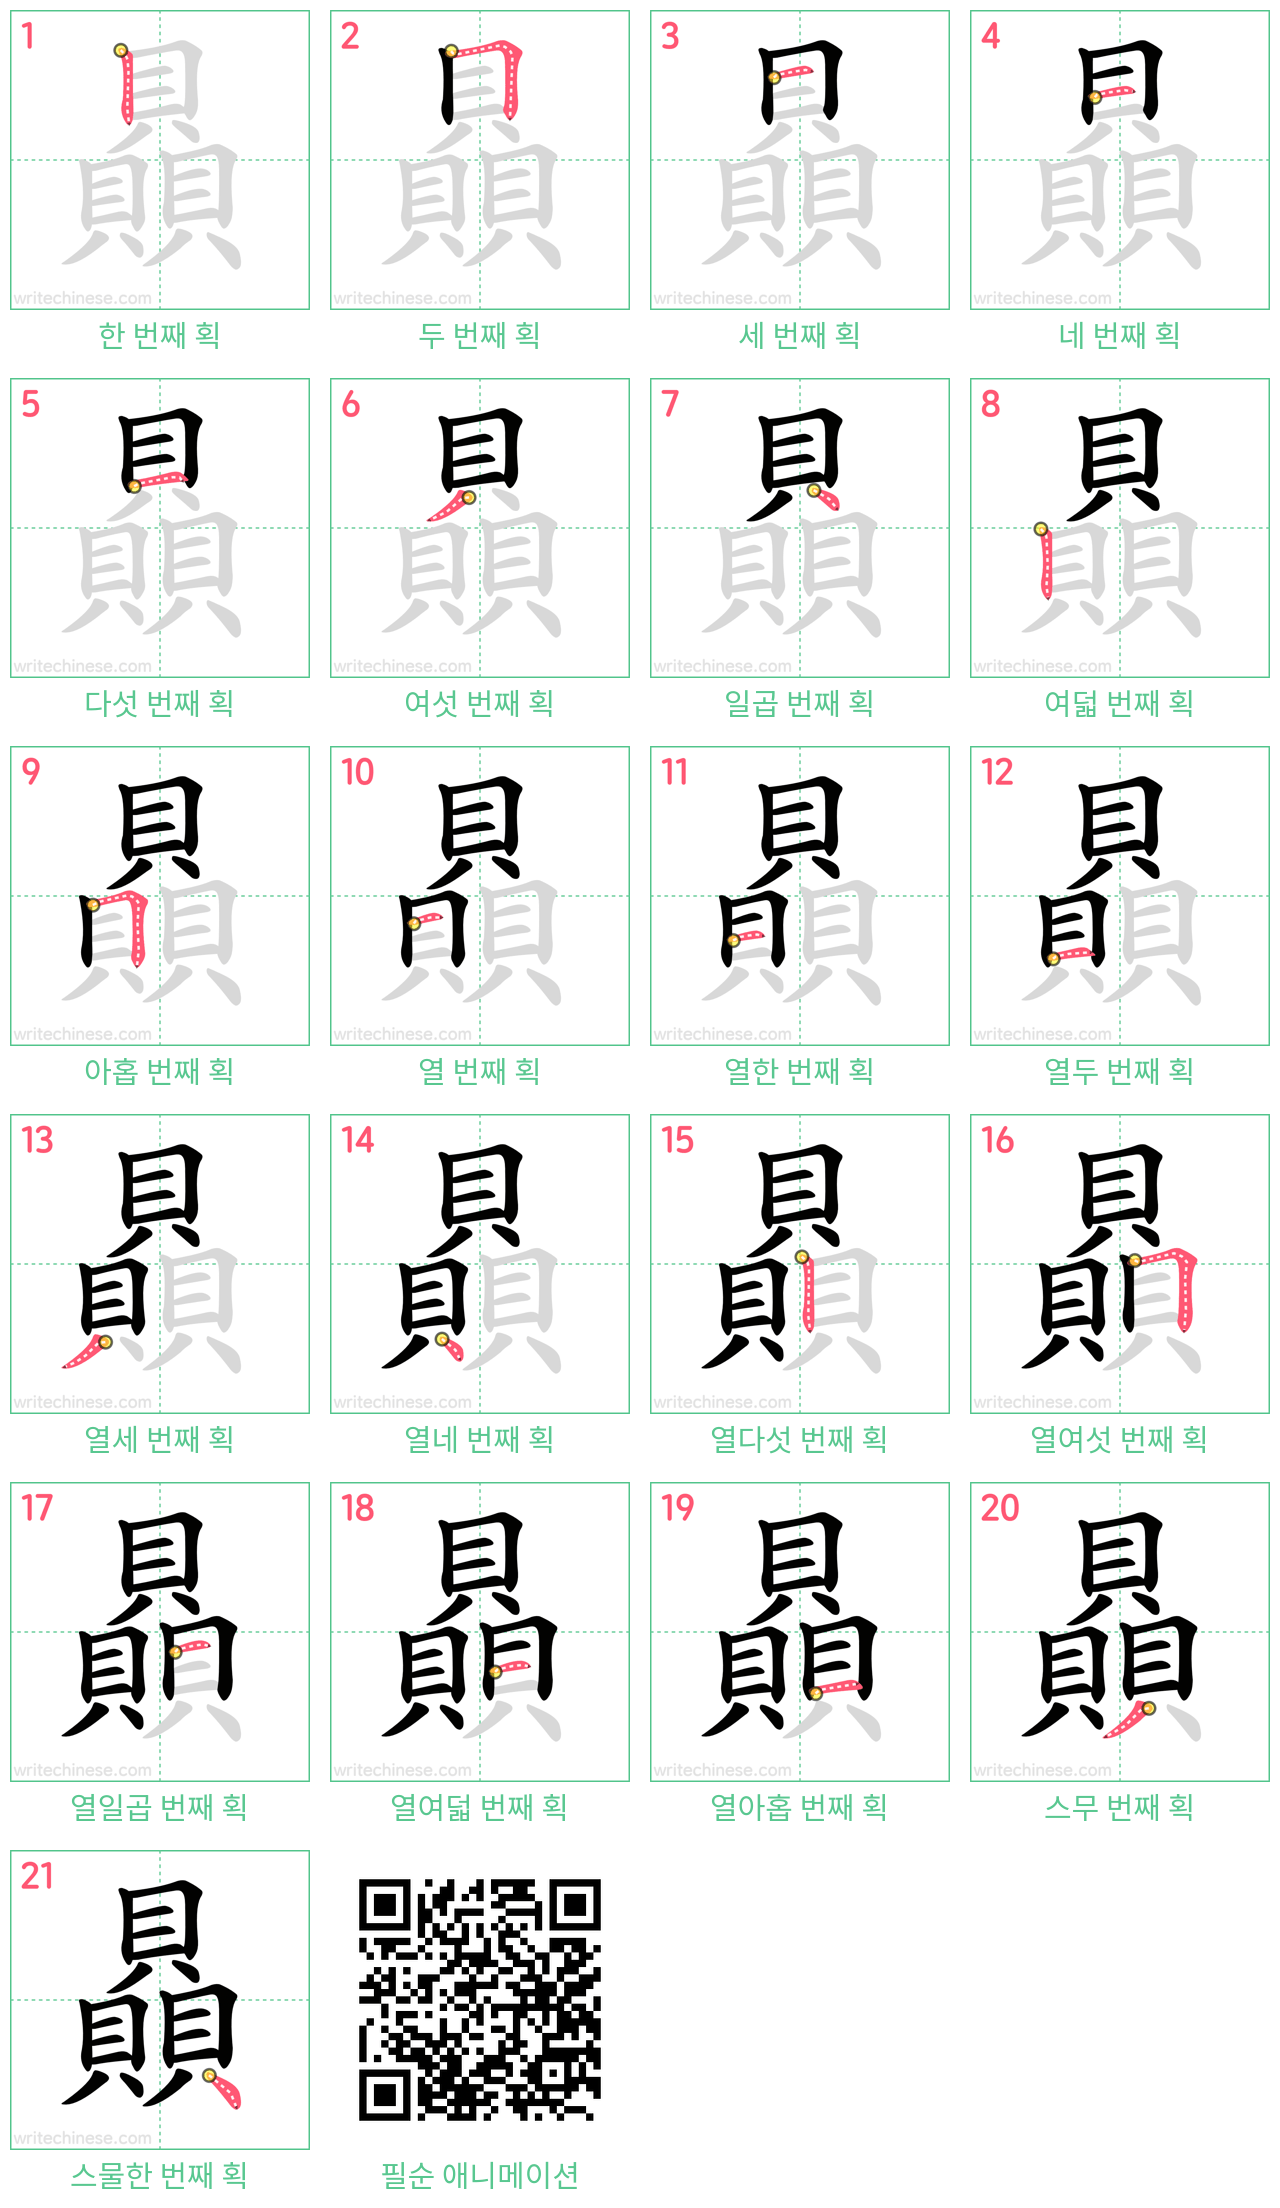 贔 step-by-step stroke order diagrams